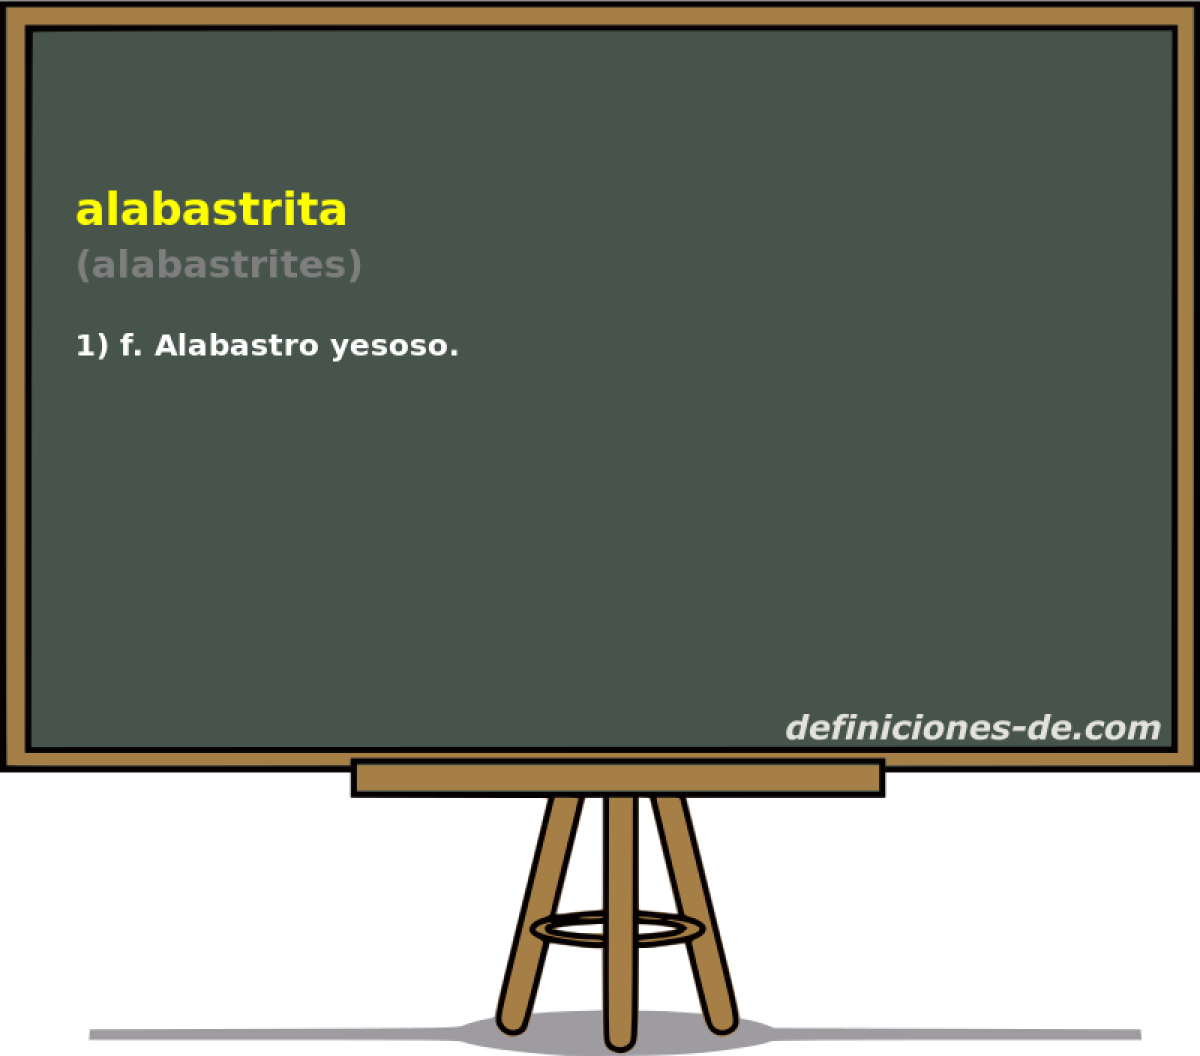 alabastrita (alabastrites)